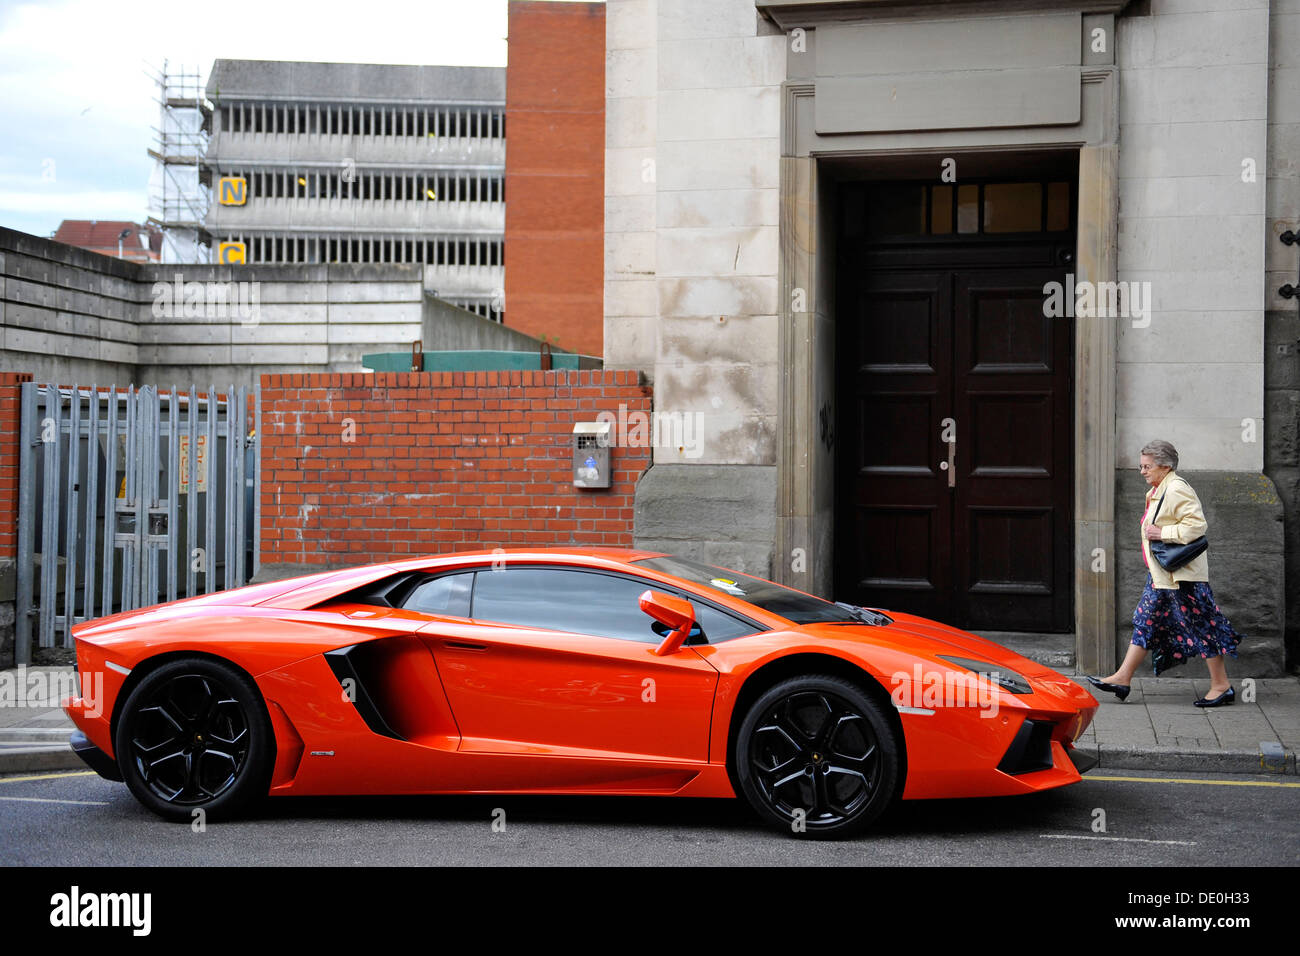 Ein Lamborghini Aventador in einem Wohngebiet von Cardiff. Stockfoto